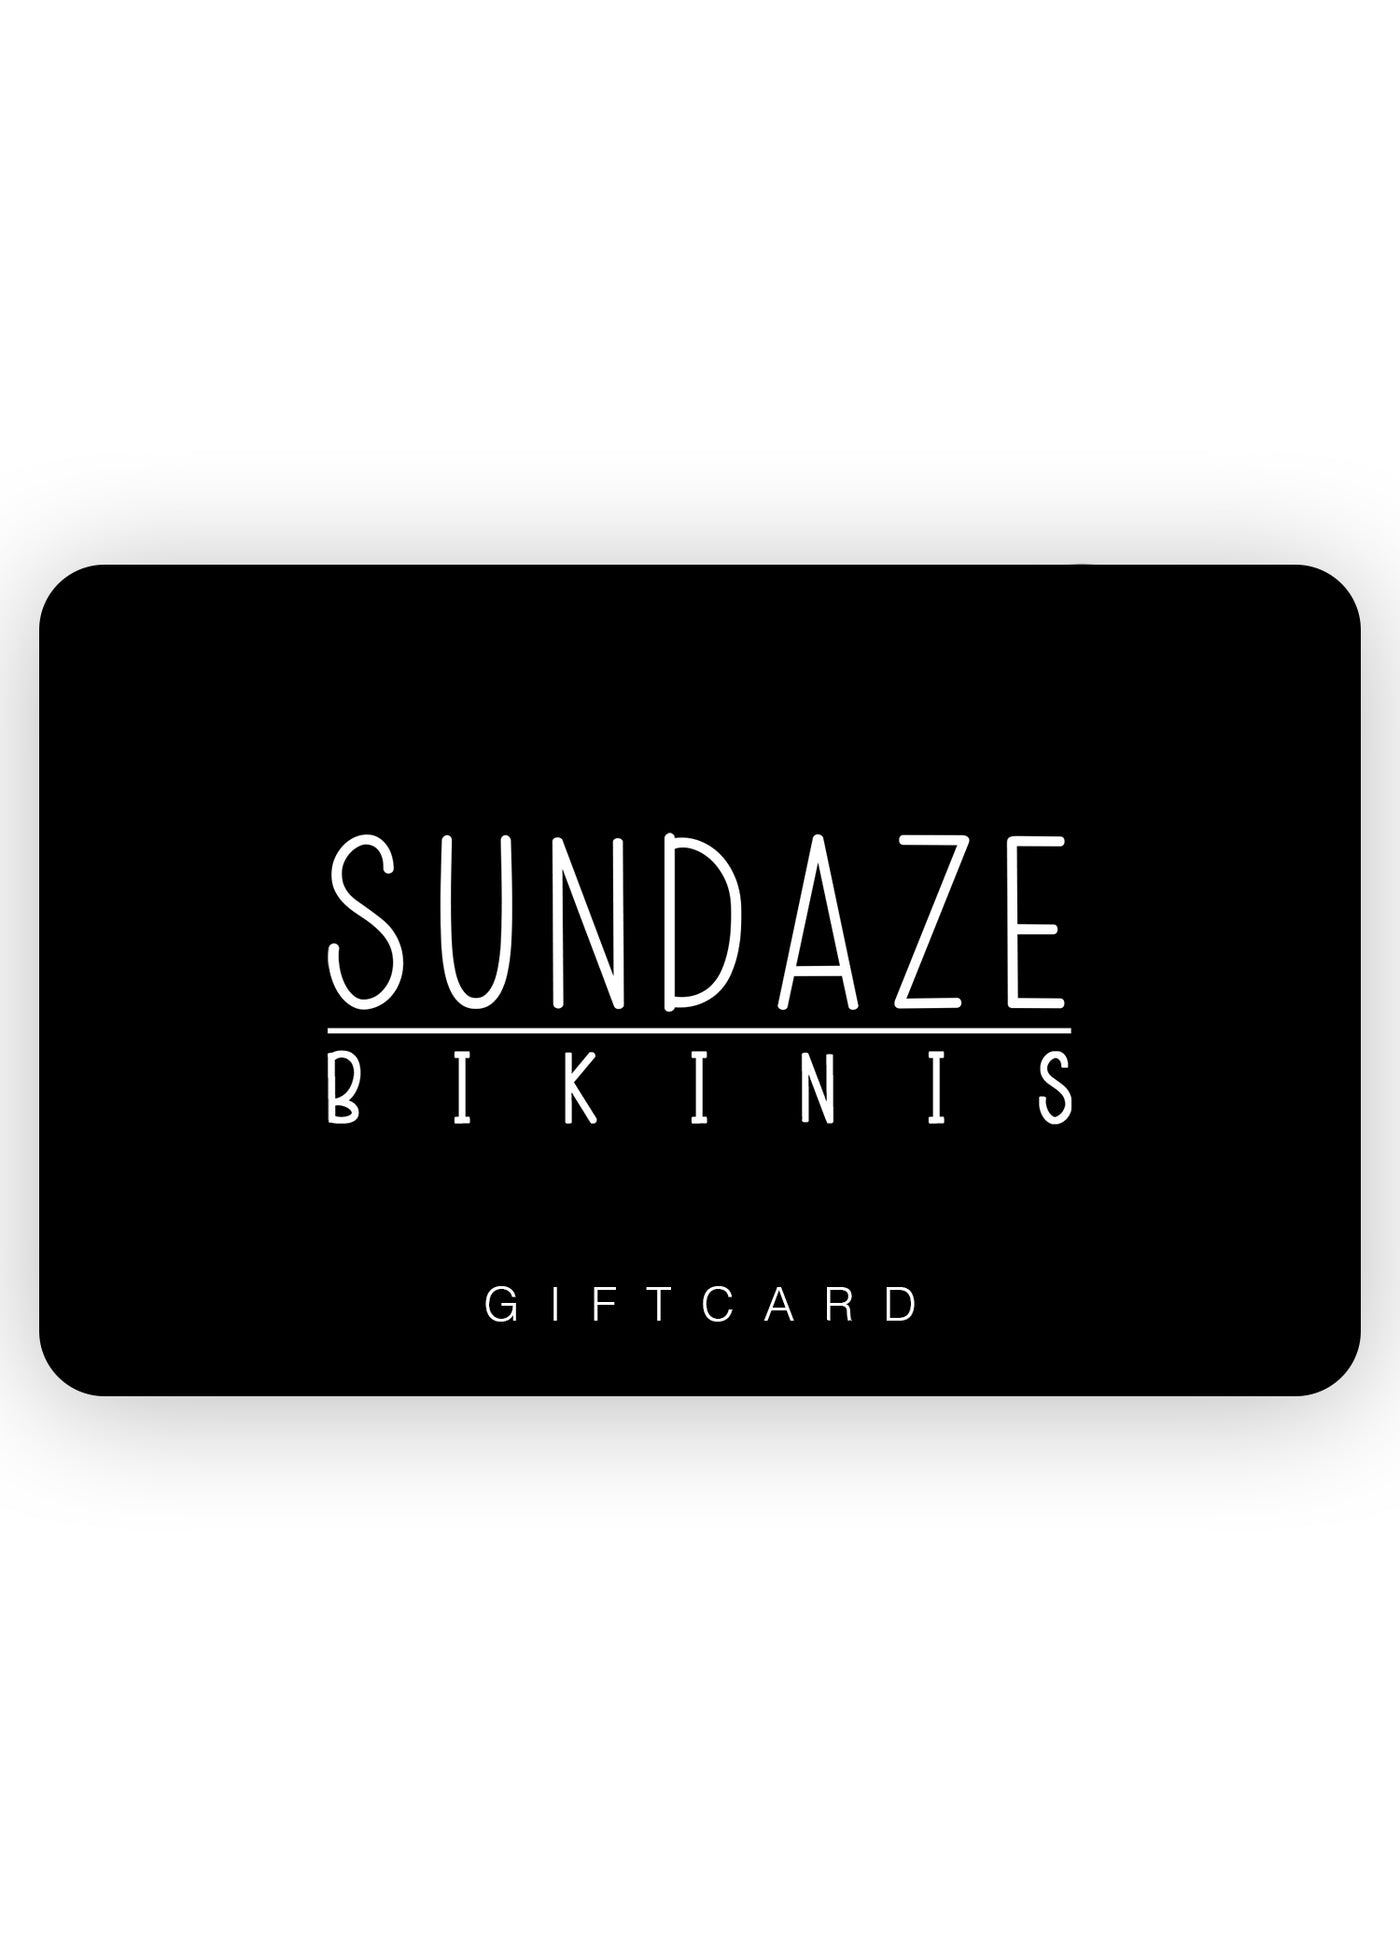 Sundaze Bikinis Gift Card